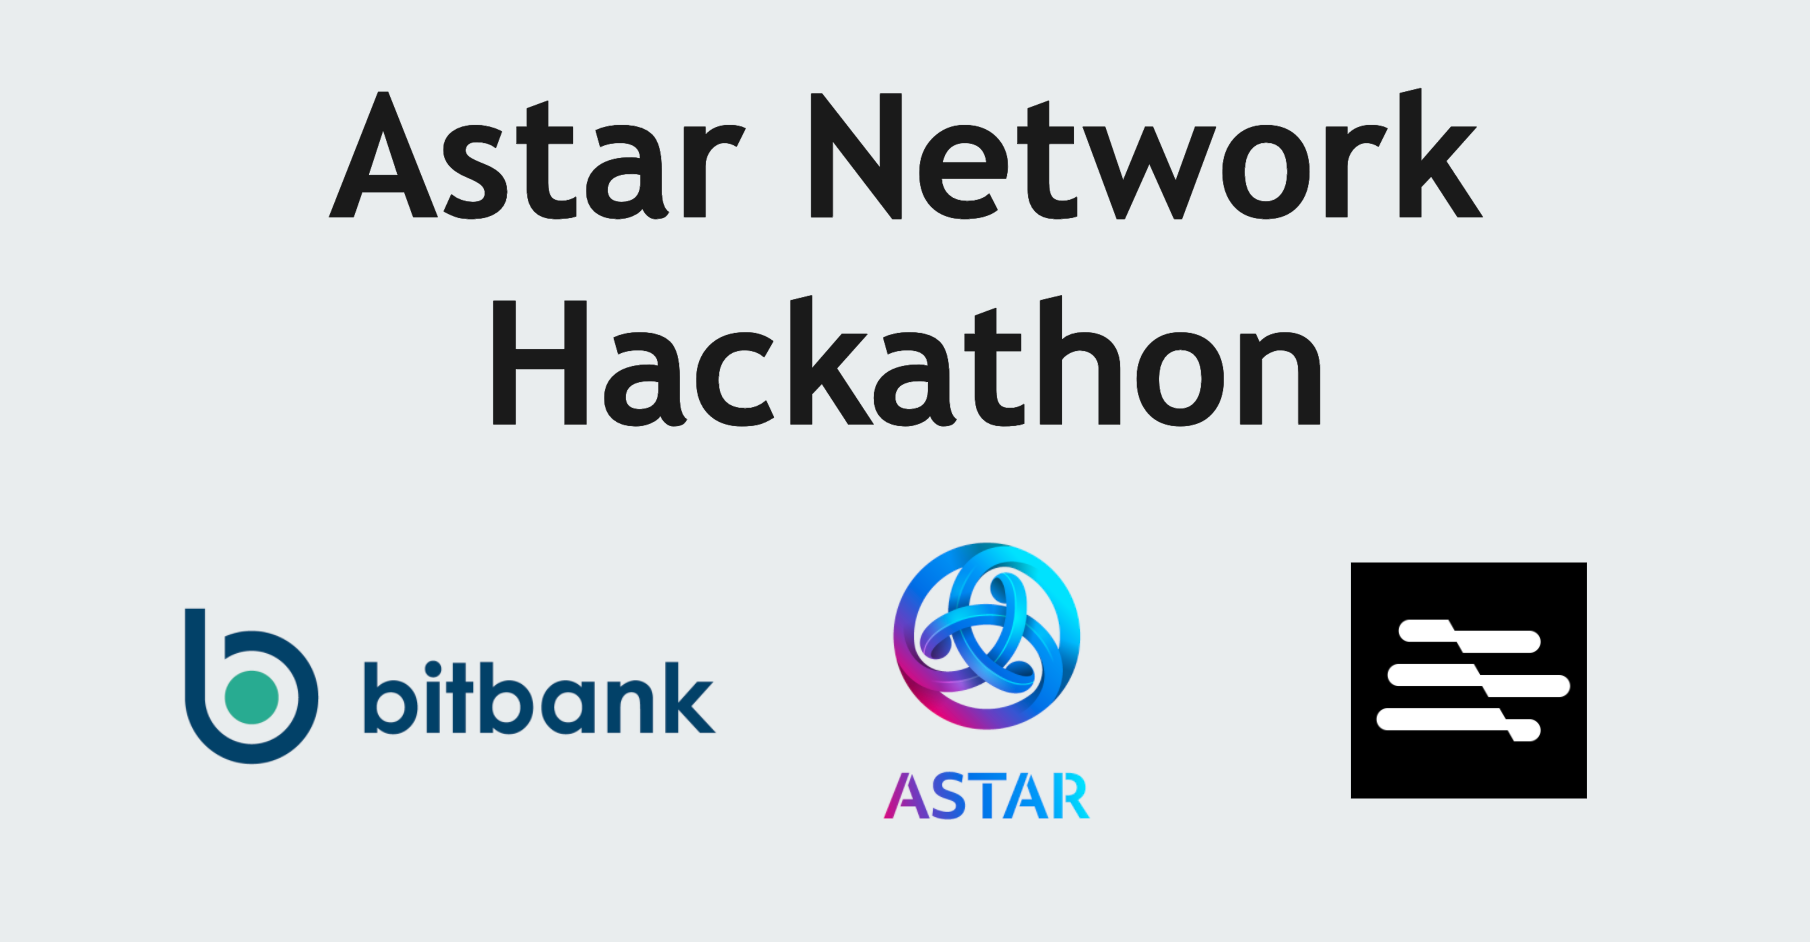 ビットバンク、「Astar Network Hackathon」にスポンサーとして協賛